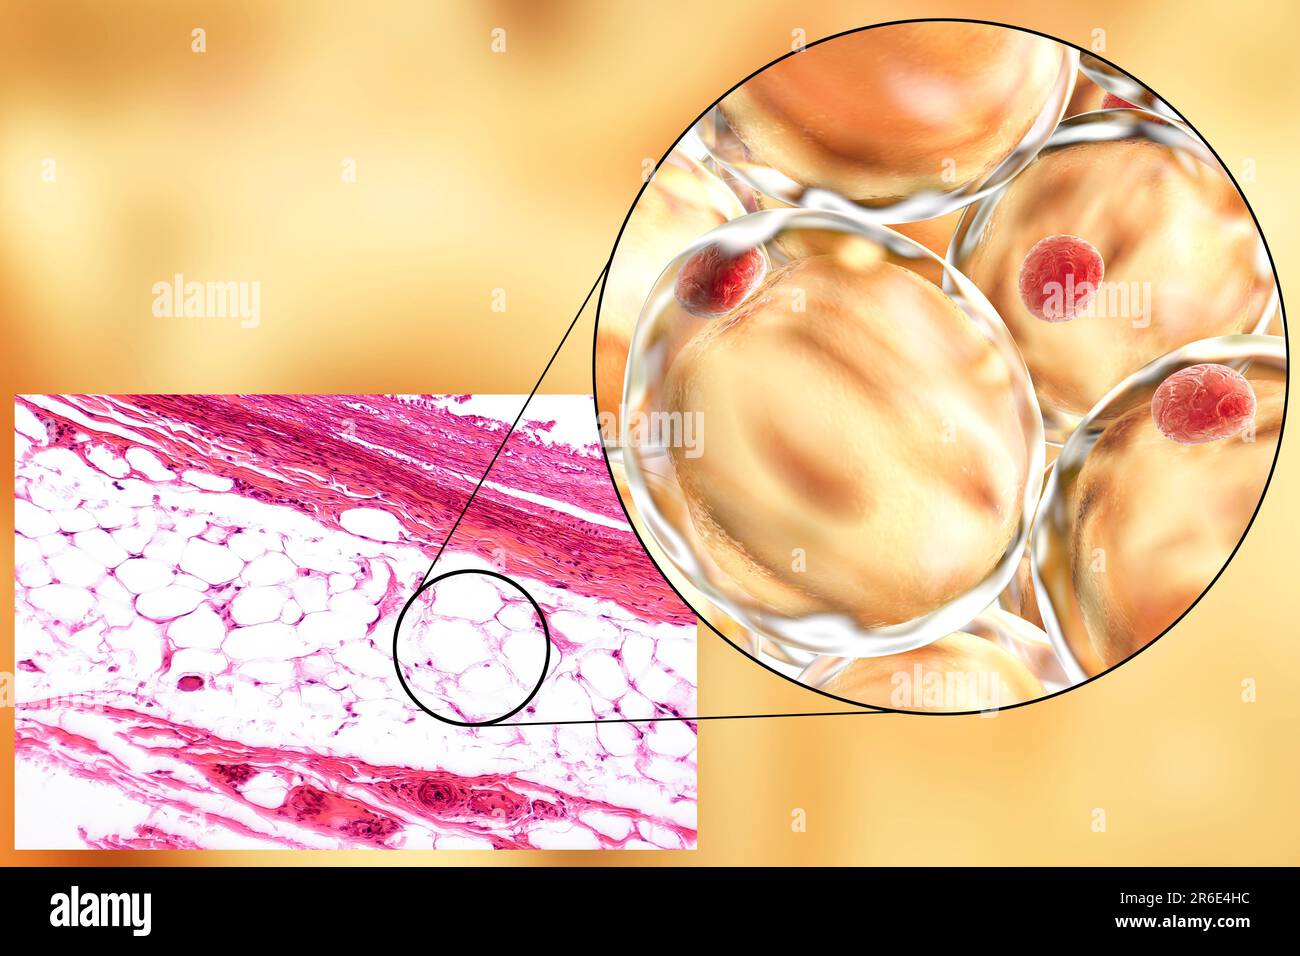 Células de grasa, micrografía de luz e ilustración de computadora. Tejido adiposo blanco compuesto de adipocitos (células grasas). Los adipocitos forman tejido adiposo, que Foto de stock